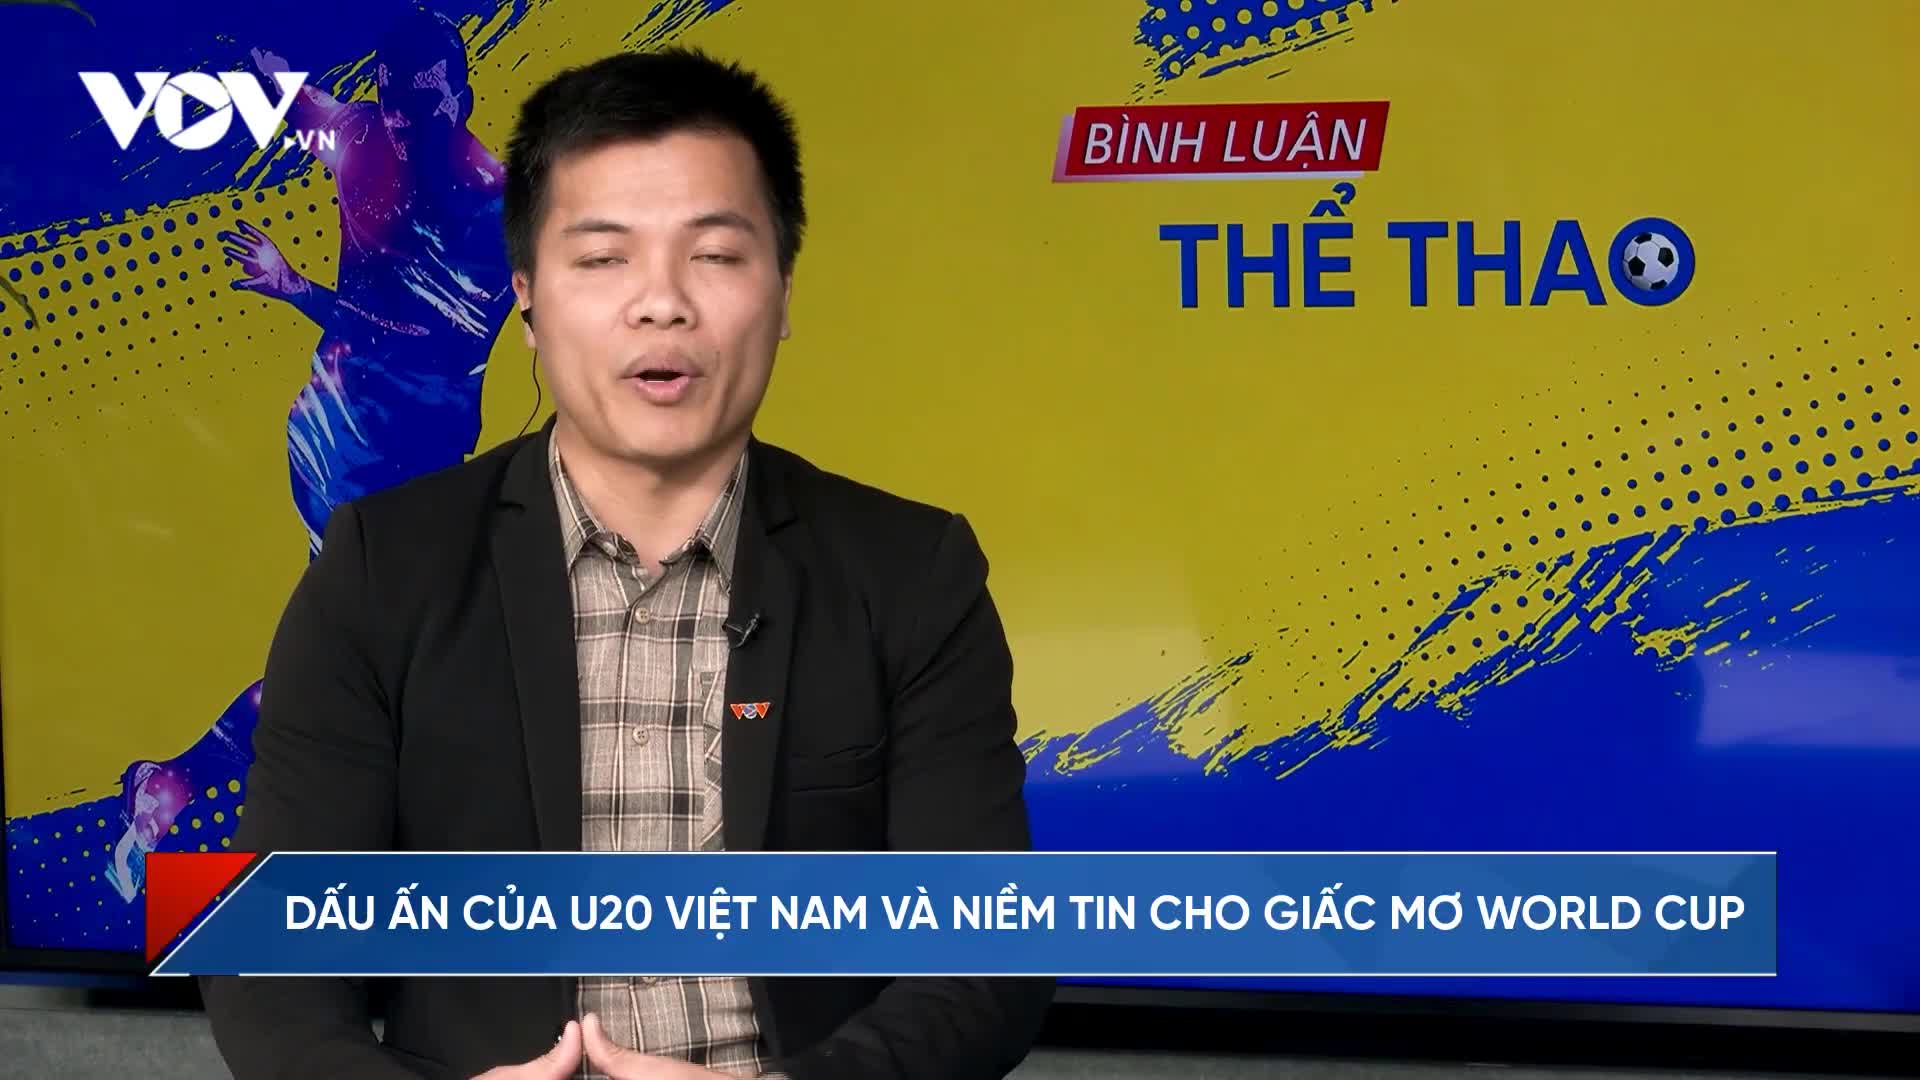 Dấu ấn của U20 Việt Nam và niềm tin cho giấc mơ World Cup